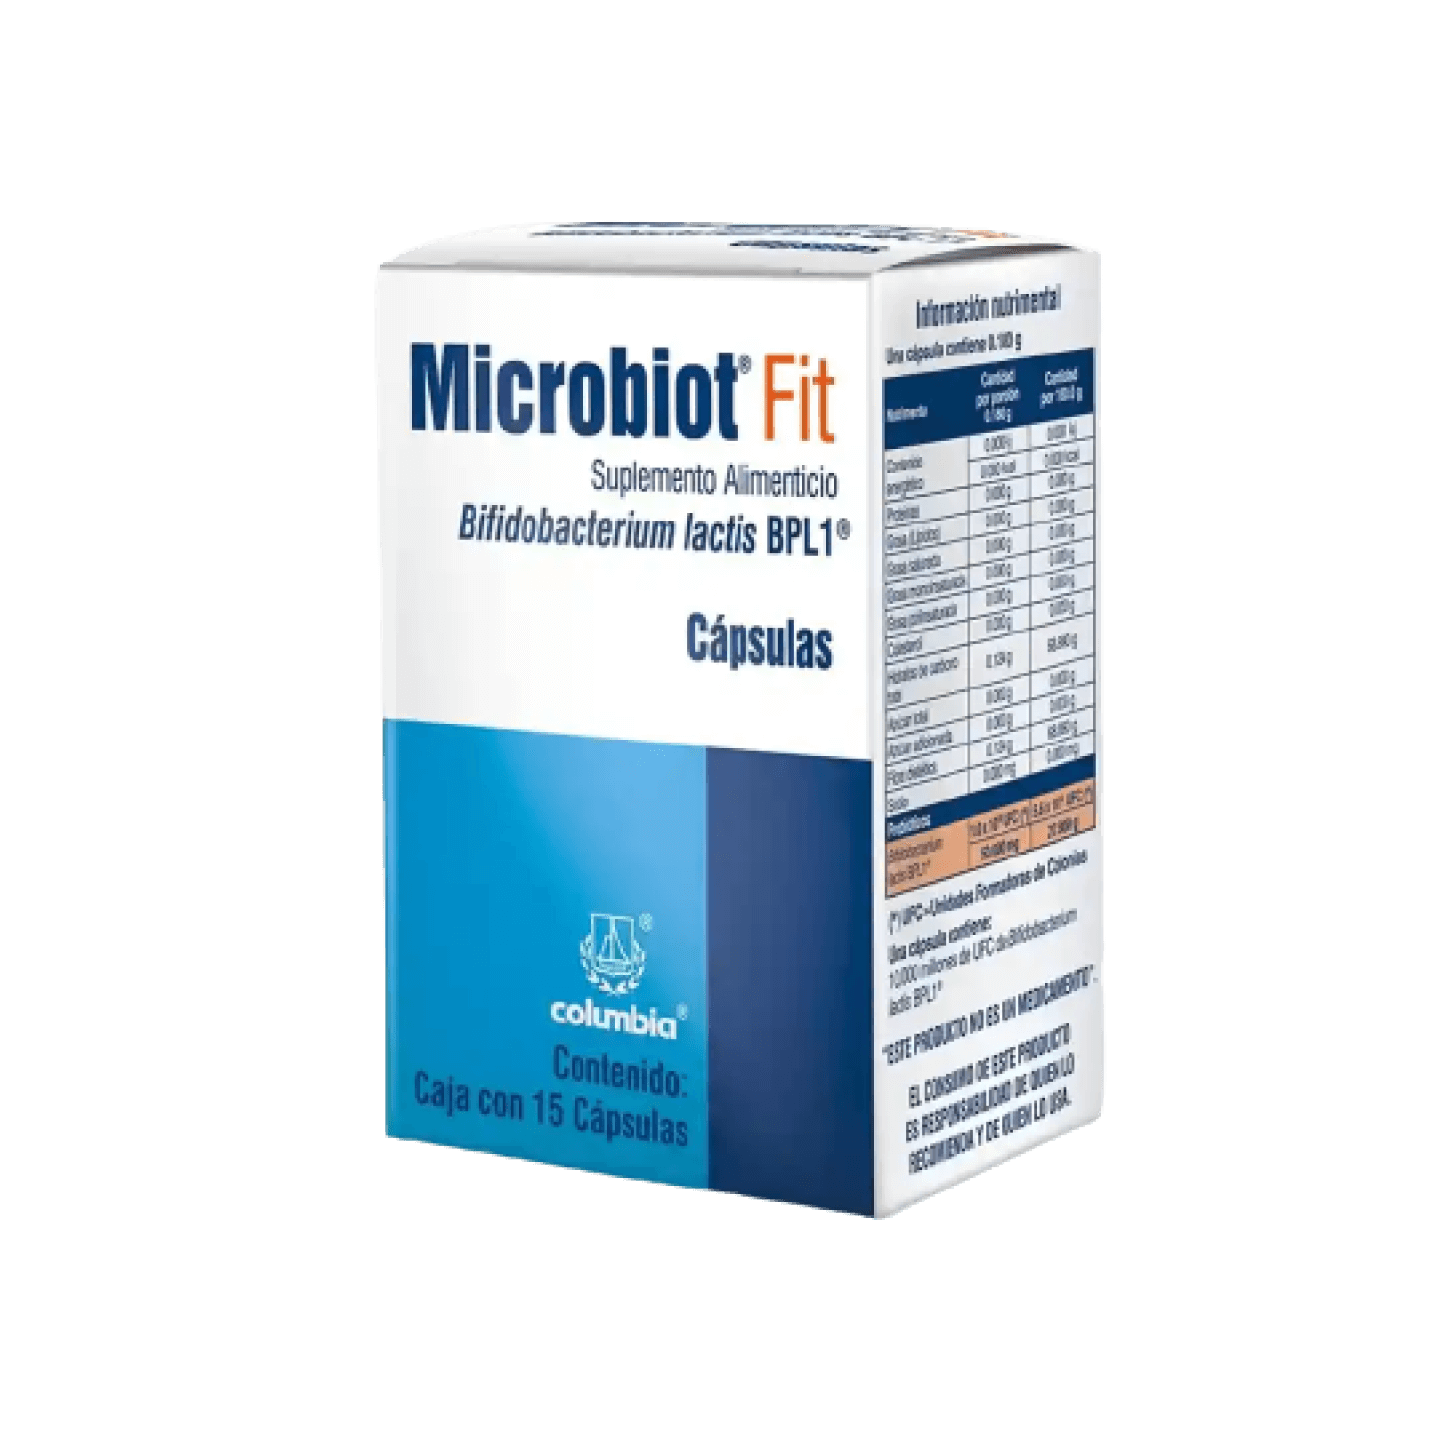 Microbiot Fit Suplemento Alimenticio (50 mg)